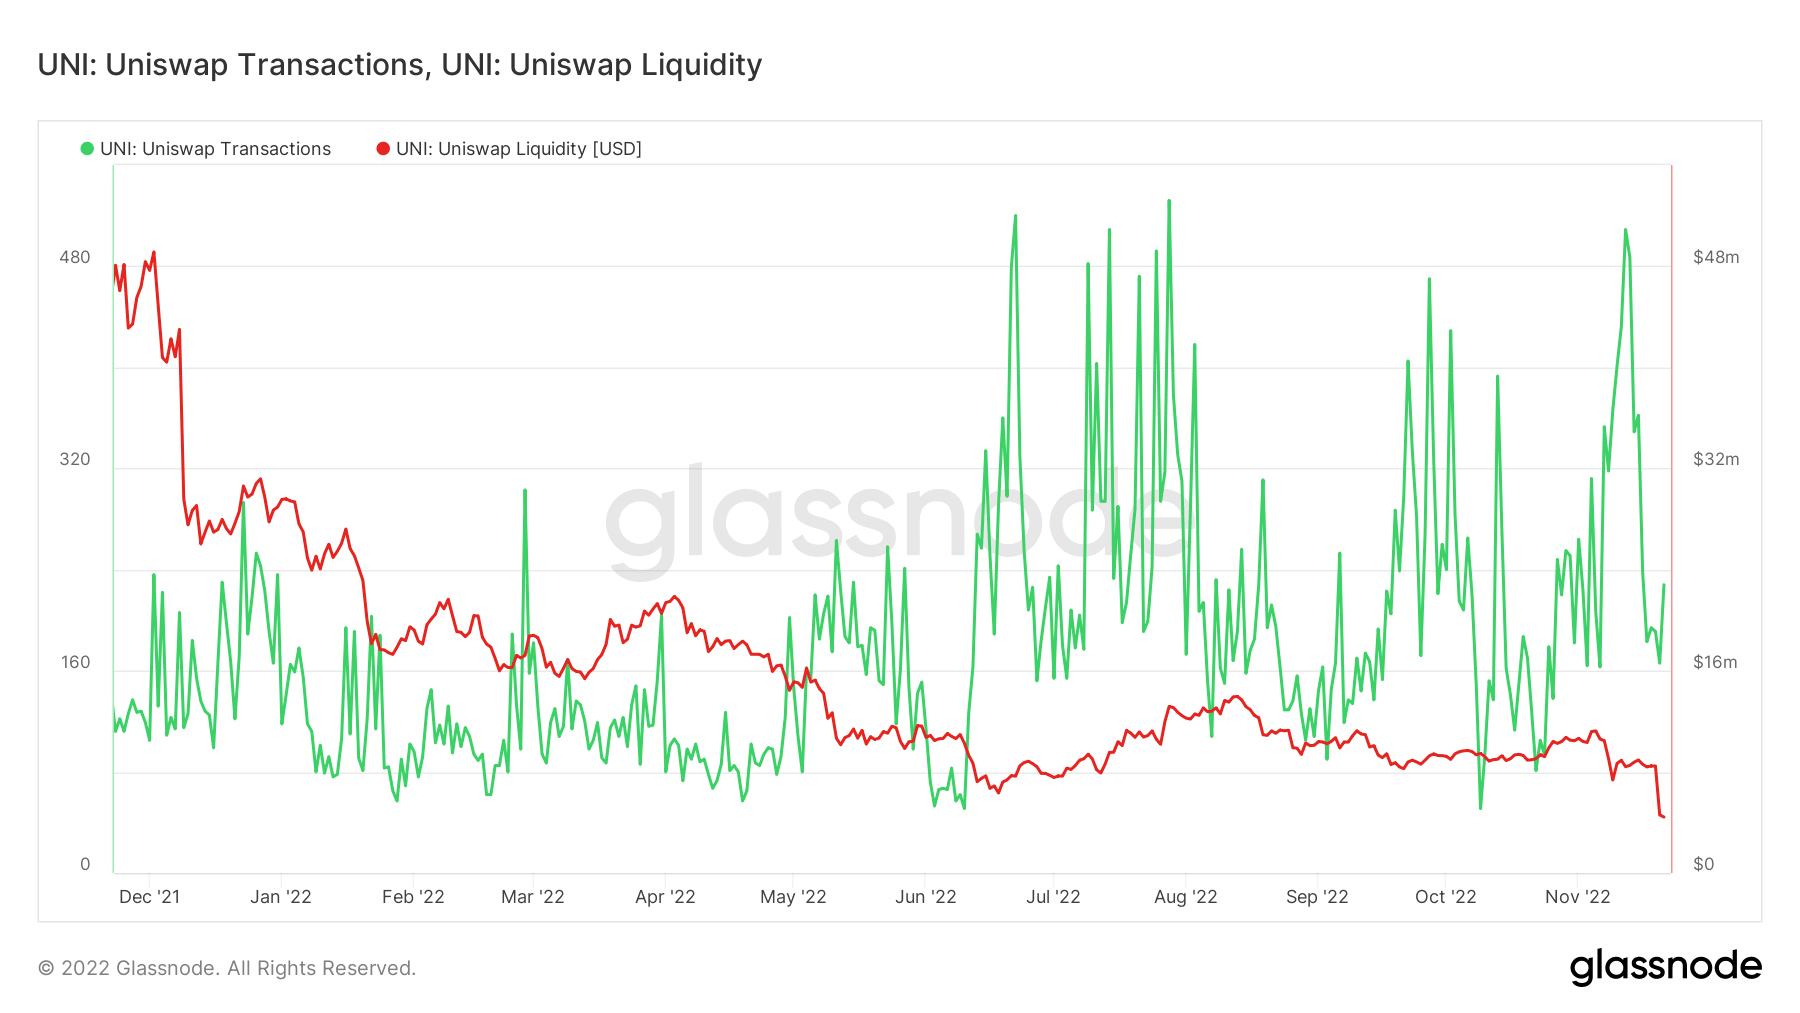 Uniswap transactions and liquidity